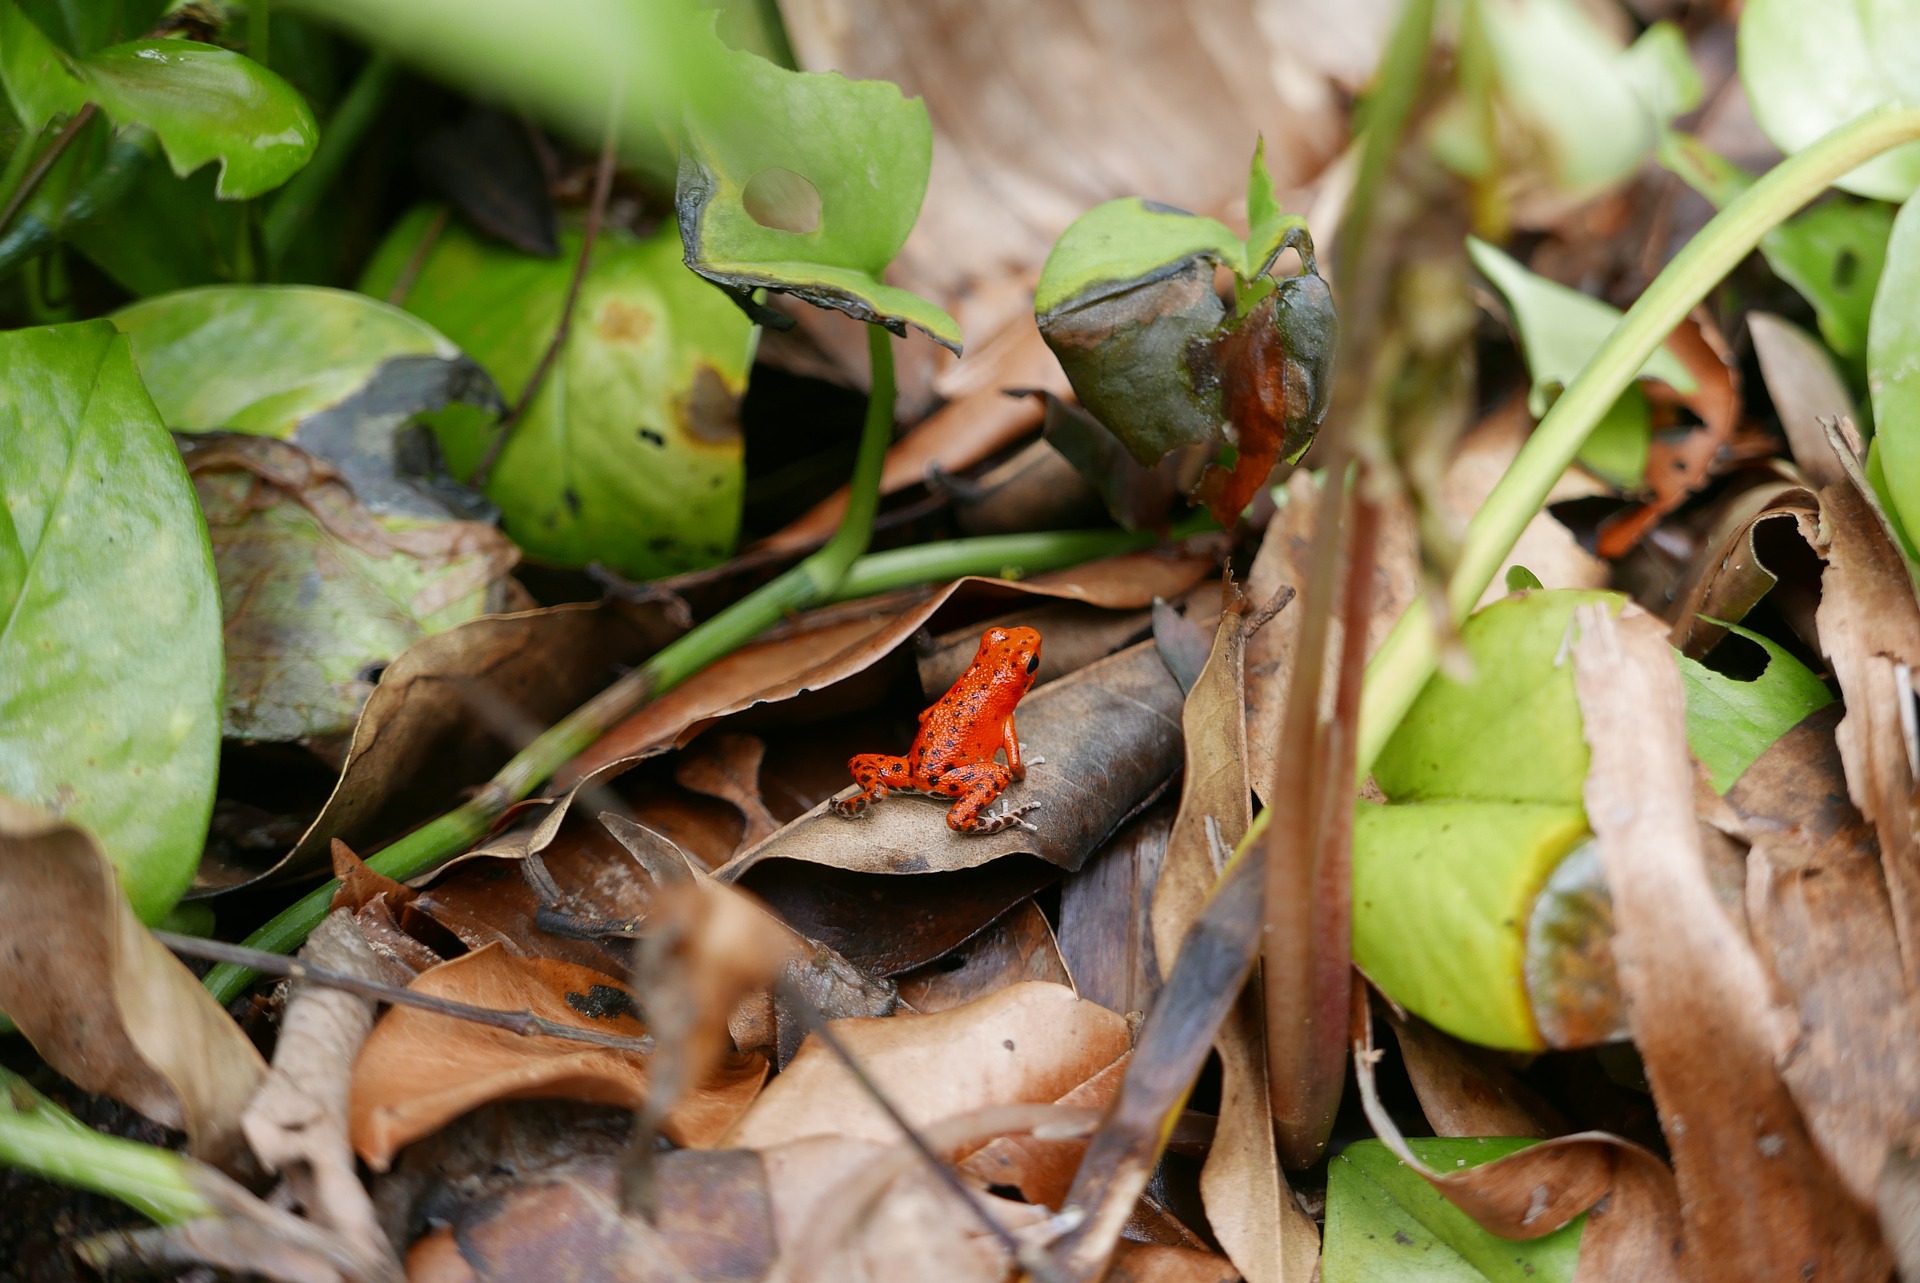 Red poison dart frog in wild